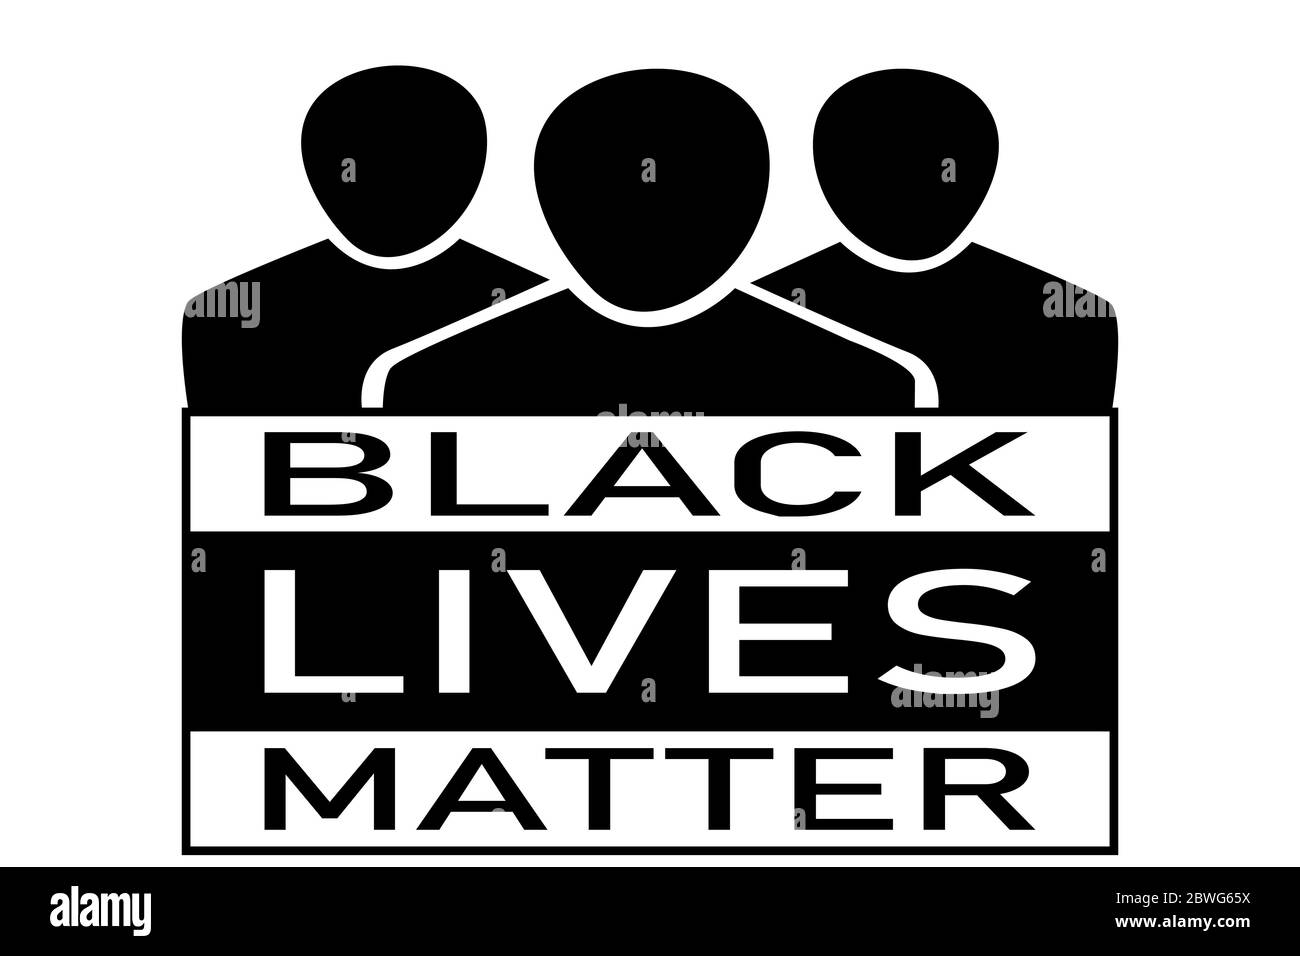 Icone di gruppo che rappresentano le persone nere con il testo sotto 'Black Lives Matter' Illustrazione Vettoriale